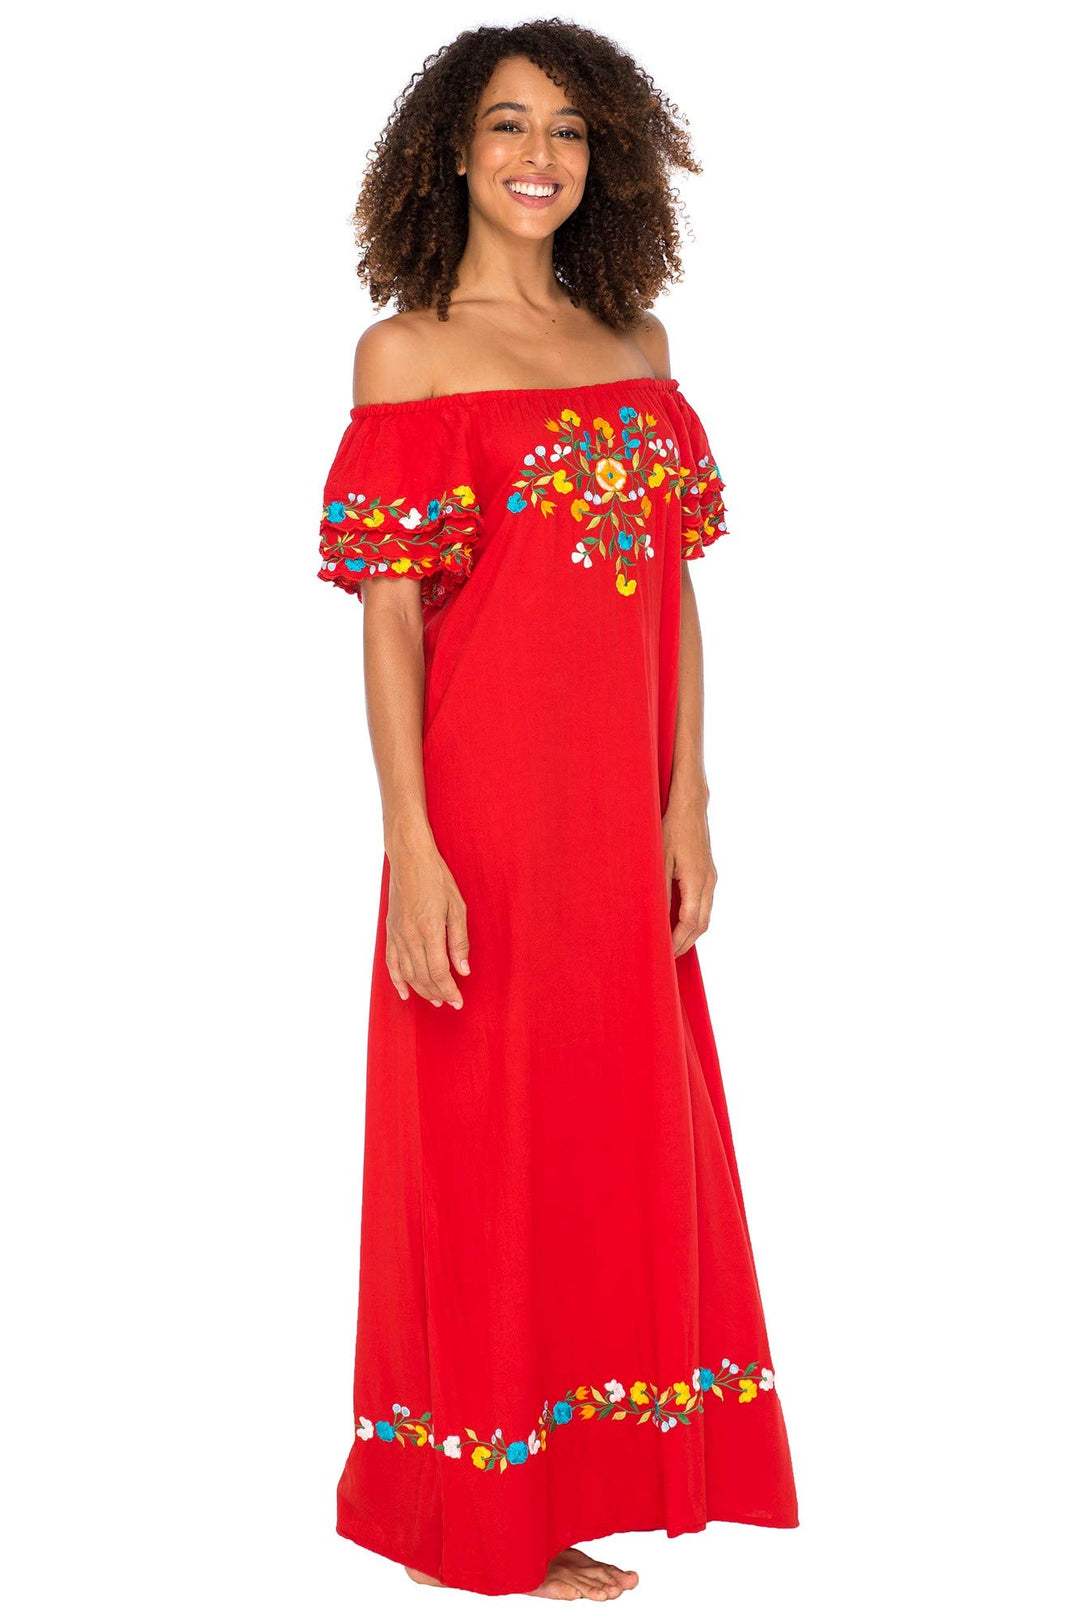 Maxi Off Shoulder Long Embroidered Floral Design Dress